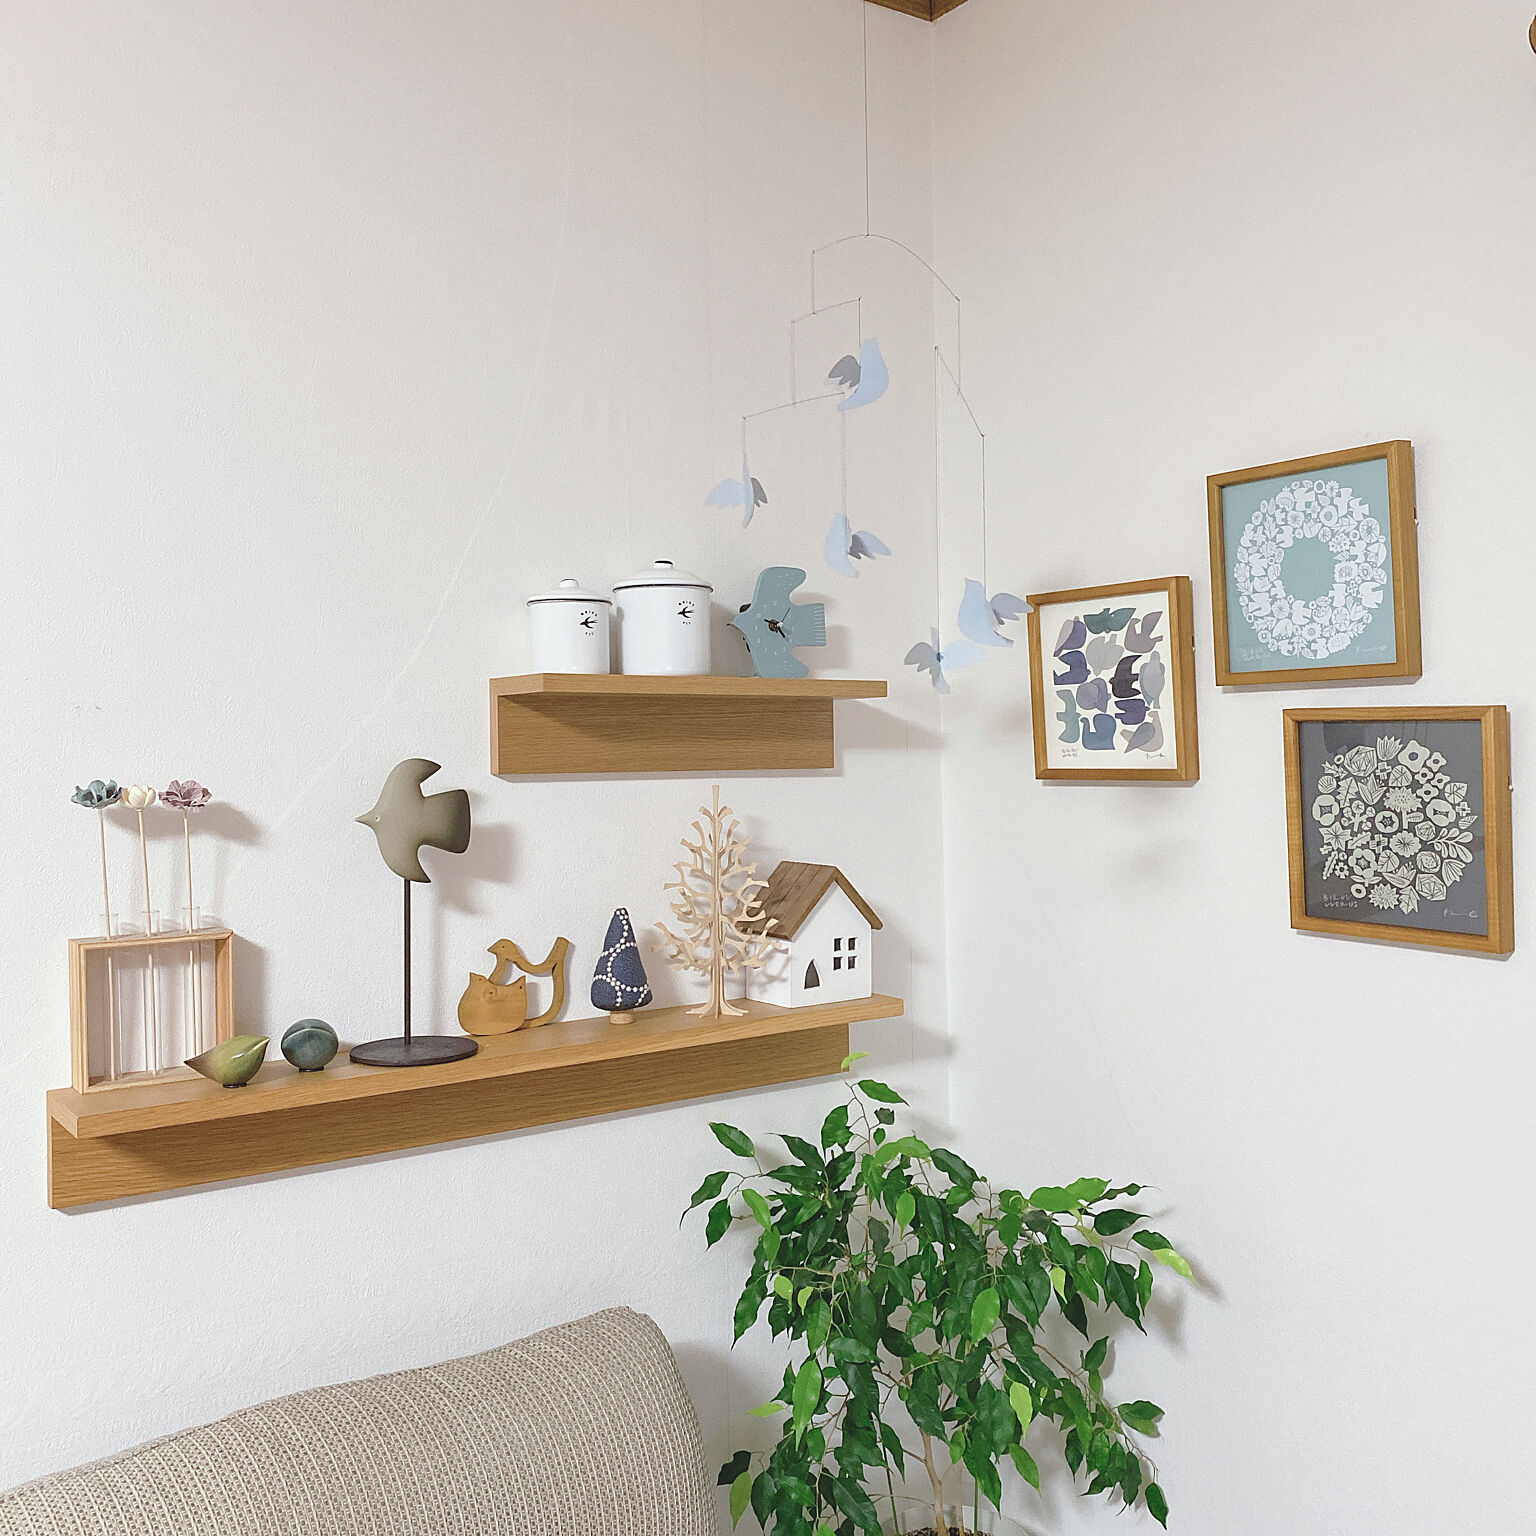 セール特価品 無印良品 MUJI 壁に付けられる家具 ミラー 小 kochi-ot.main.jp